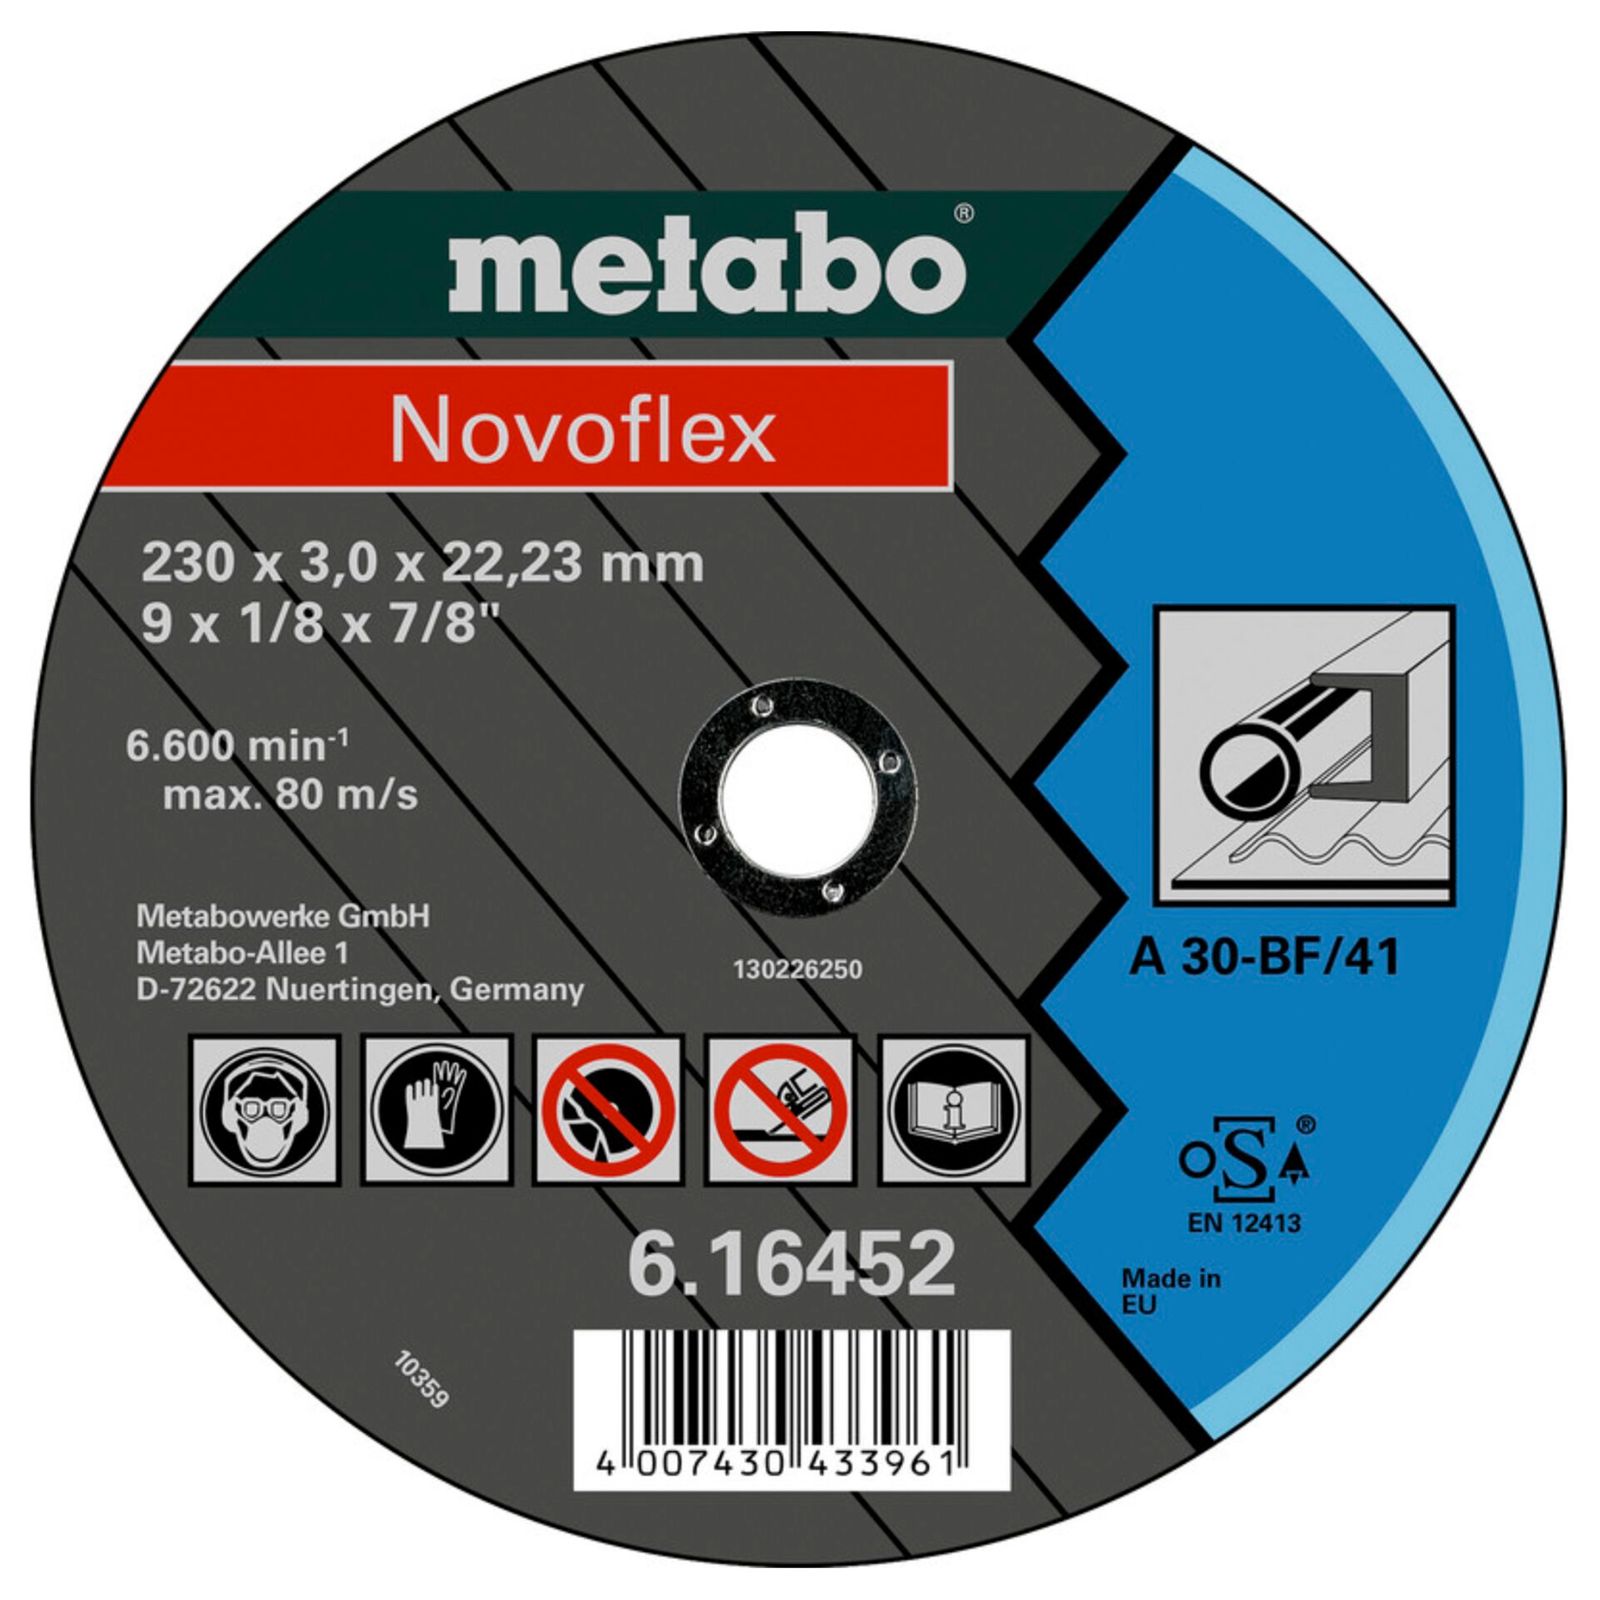 Metabo Novoflex 230x3,0x22,2 acciaio